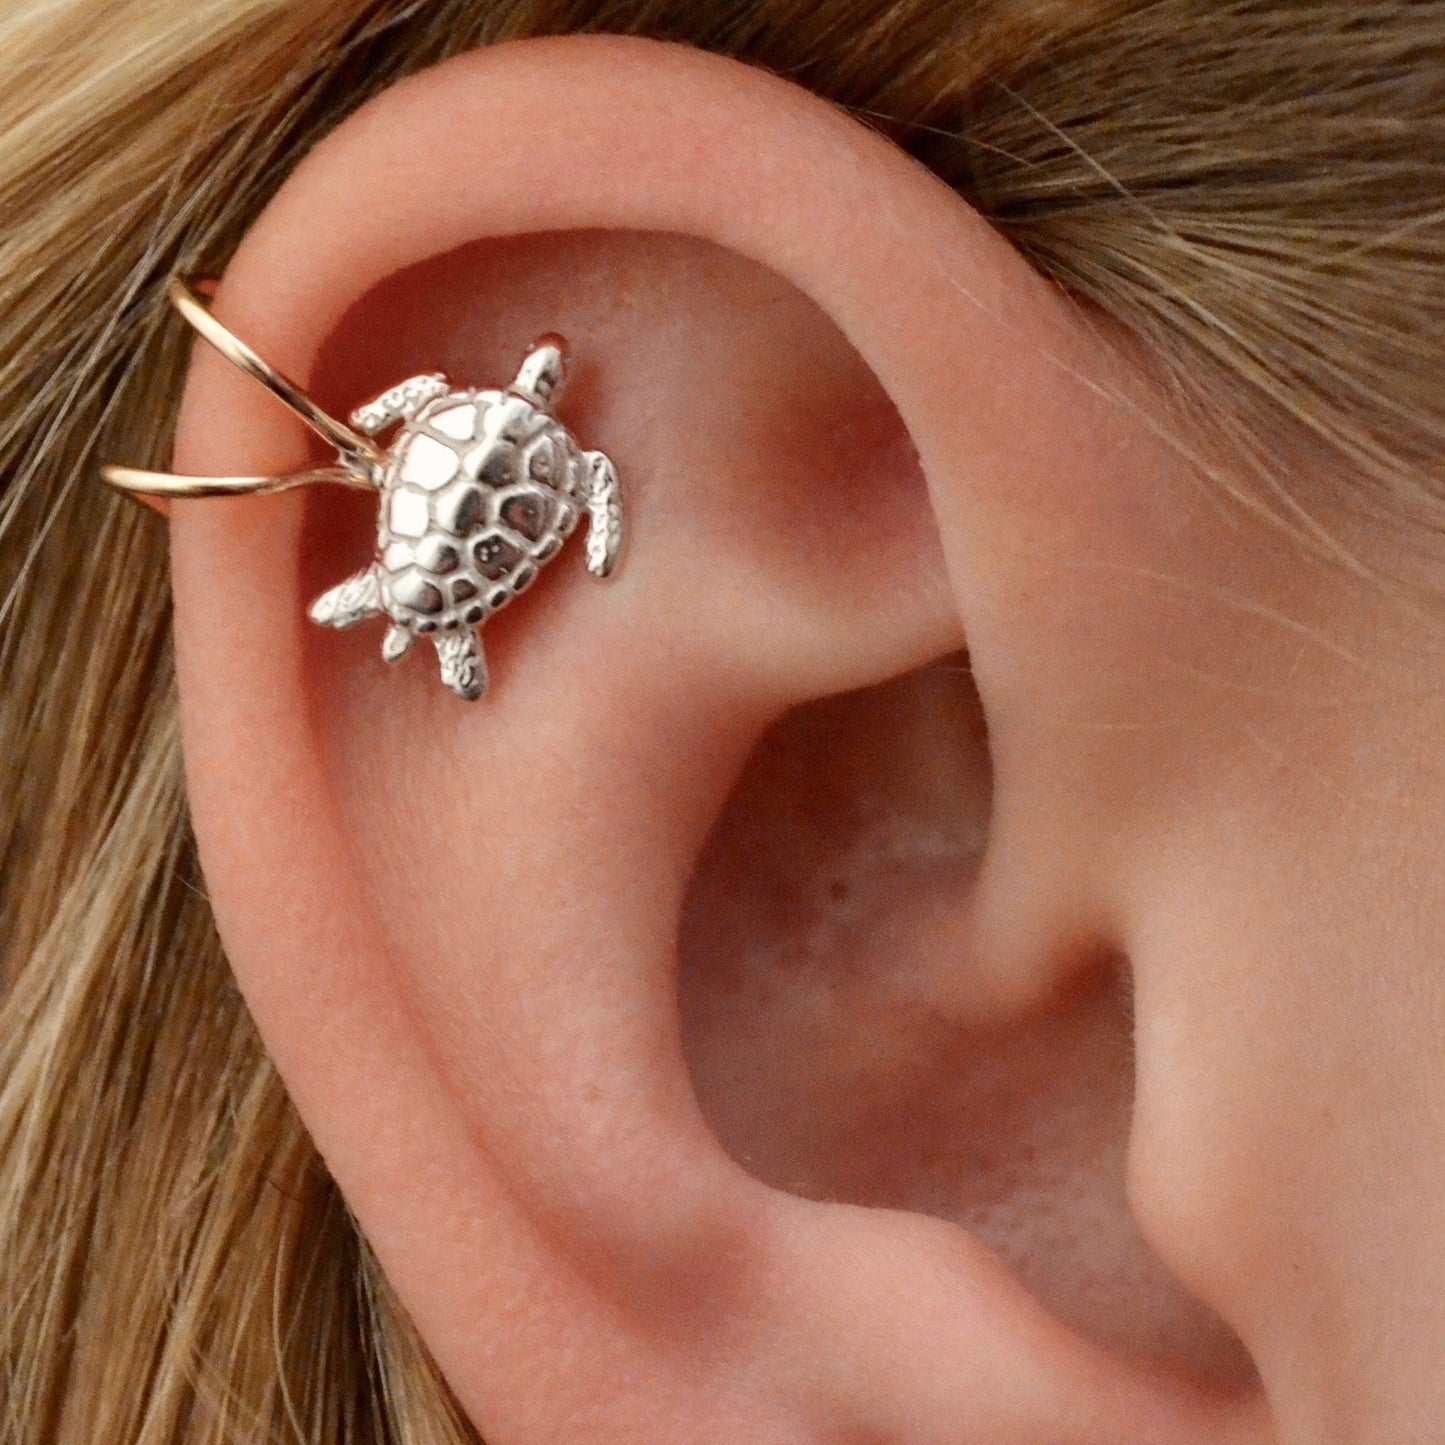 Sea Turtle - Cartilage Ear Cuff - EC809